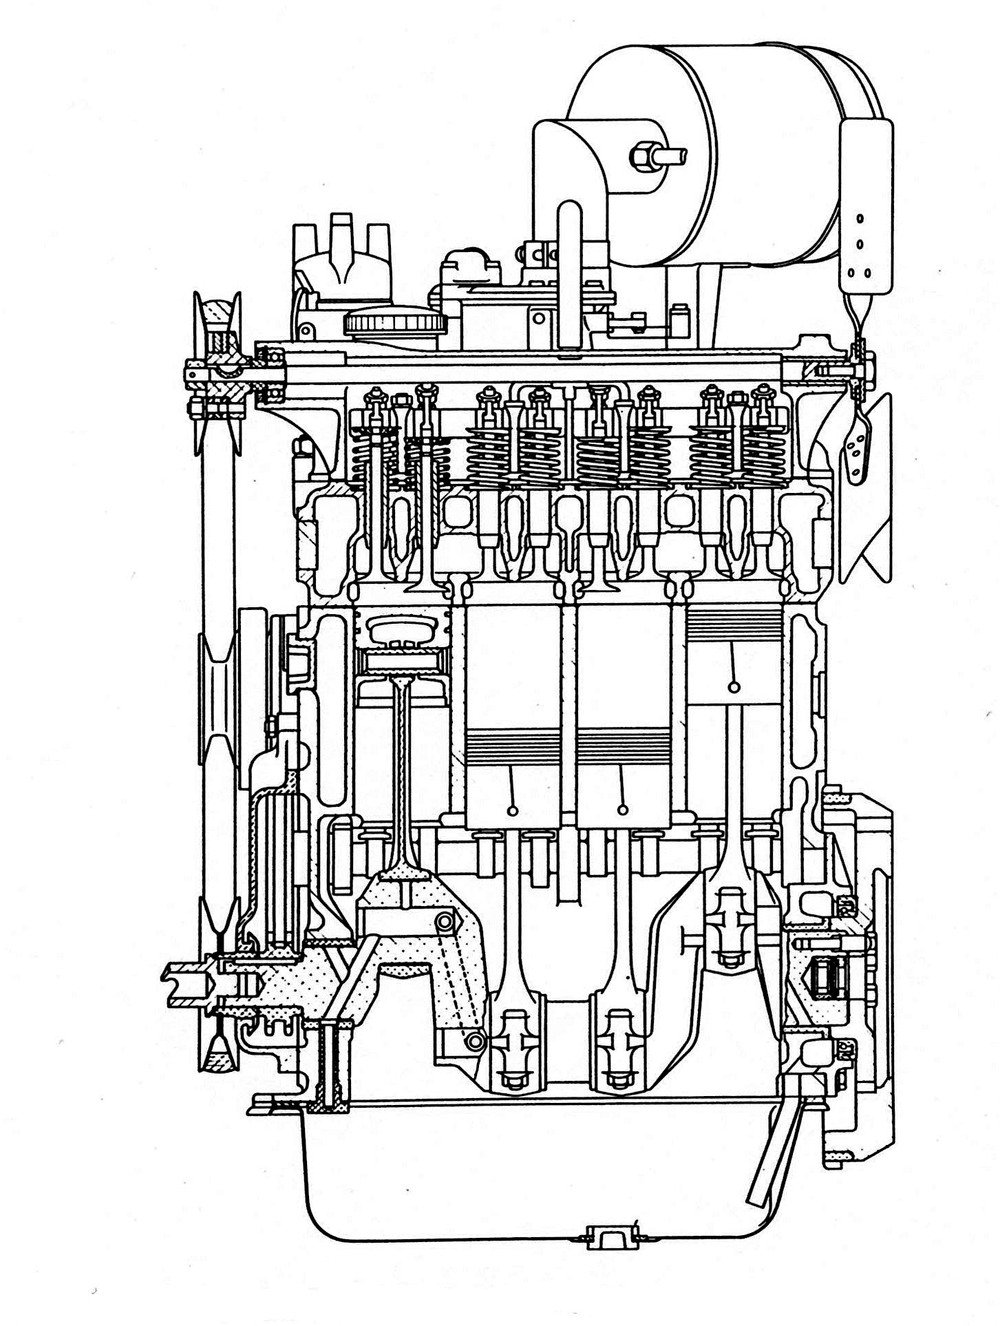 Sezione longitudinale della versione con distribuzione ad aste e bilancieri del motore della famosa Fiat 500 &ldquo;Topolino&rdquo;. Come si pu&ograve; chiaramente osservare, l&rsquo;albero &egrave; supportato da due soli cuscinetti di banco